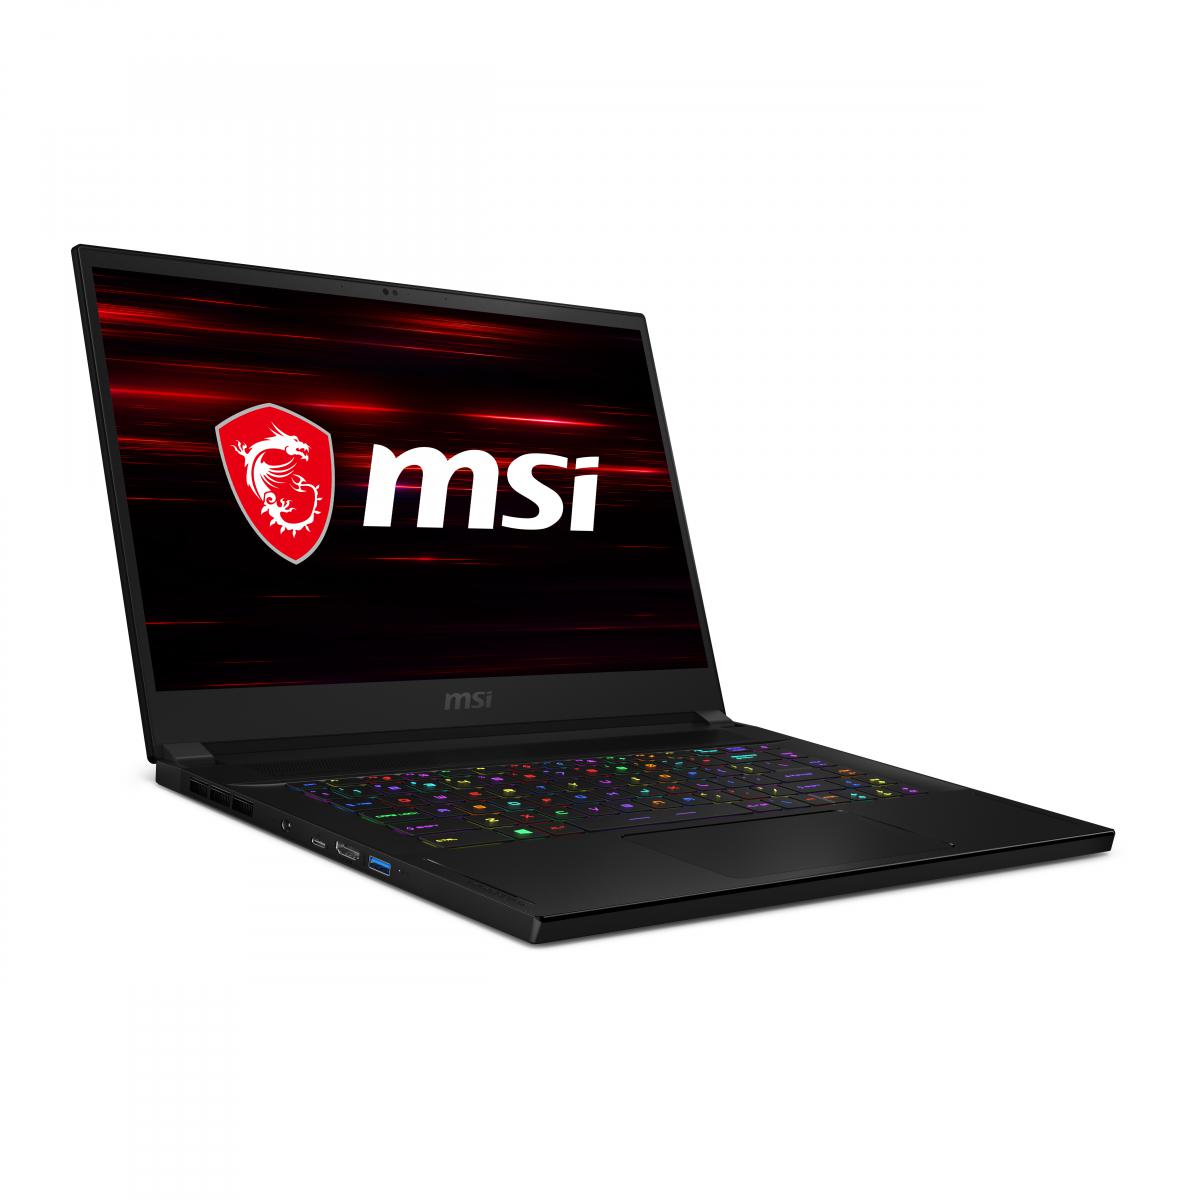 Msi MSI GS66 STEALTH 10SF I7-10875H Intel Core i7 - 15.6'